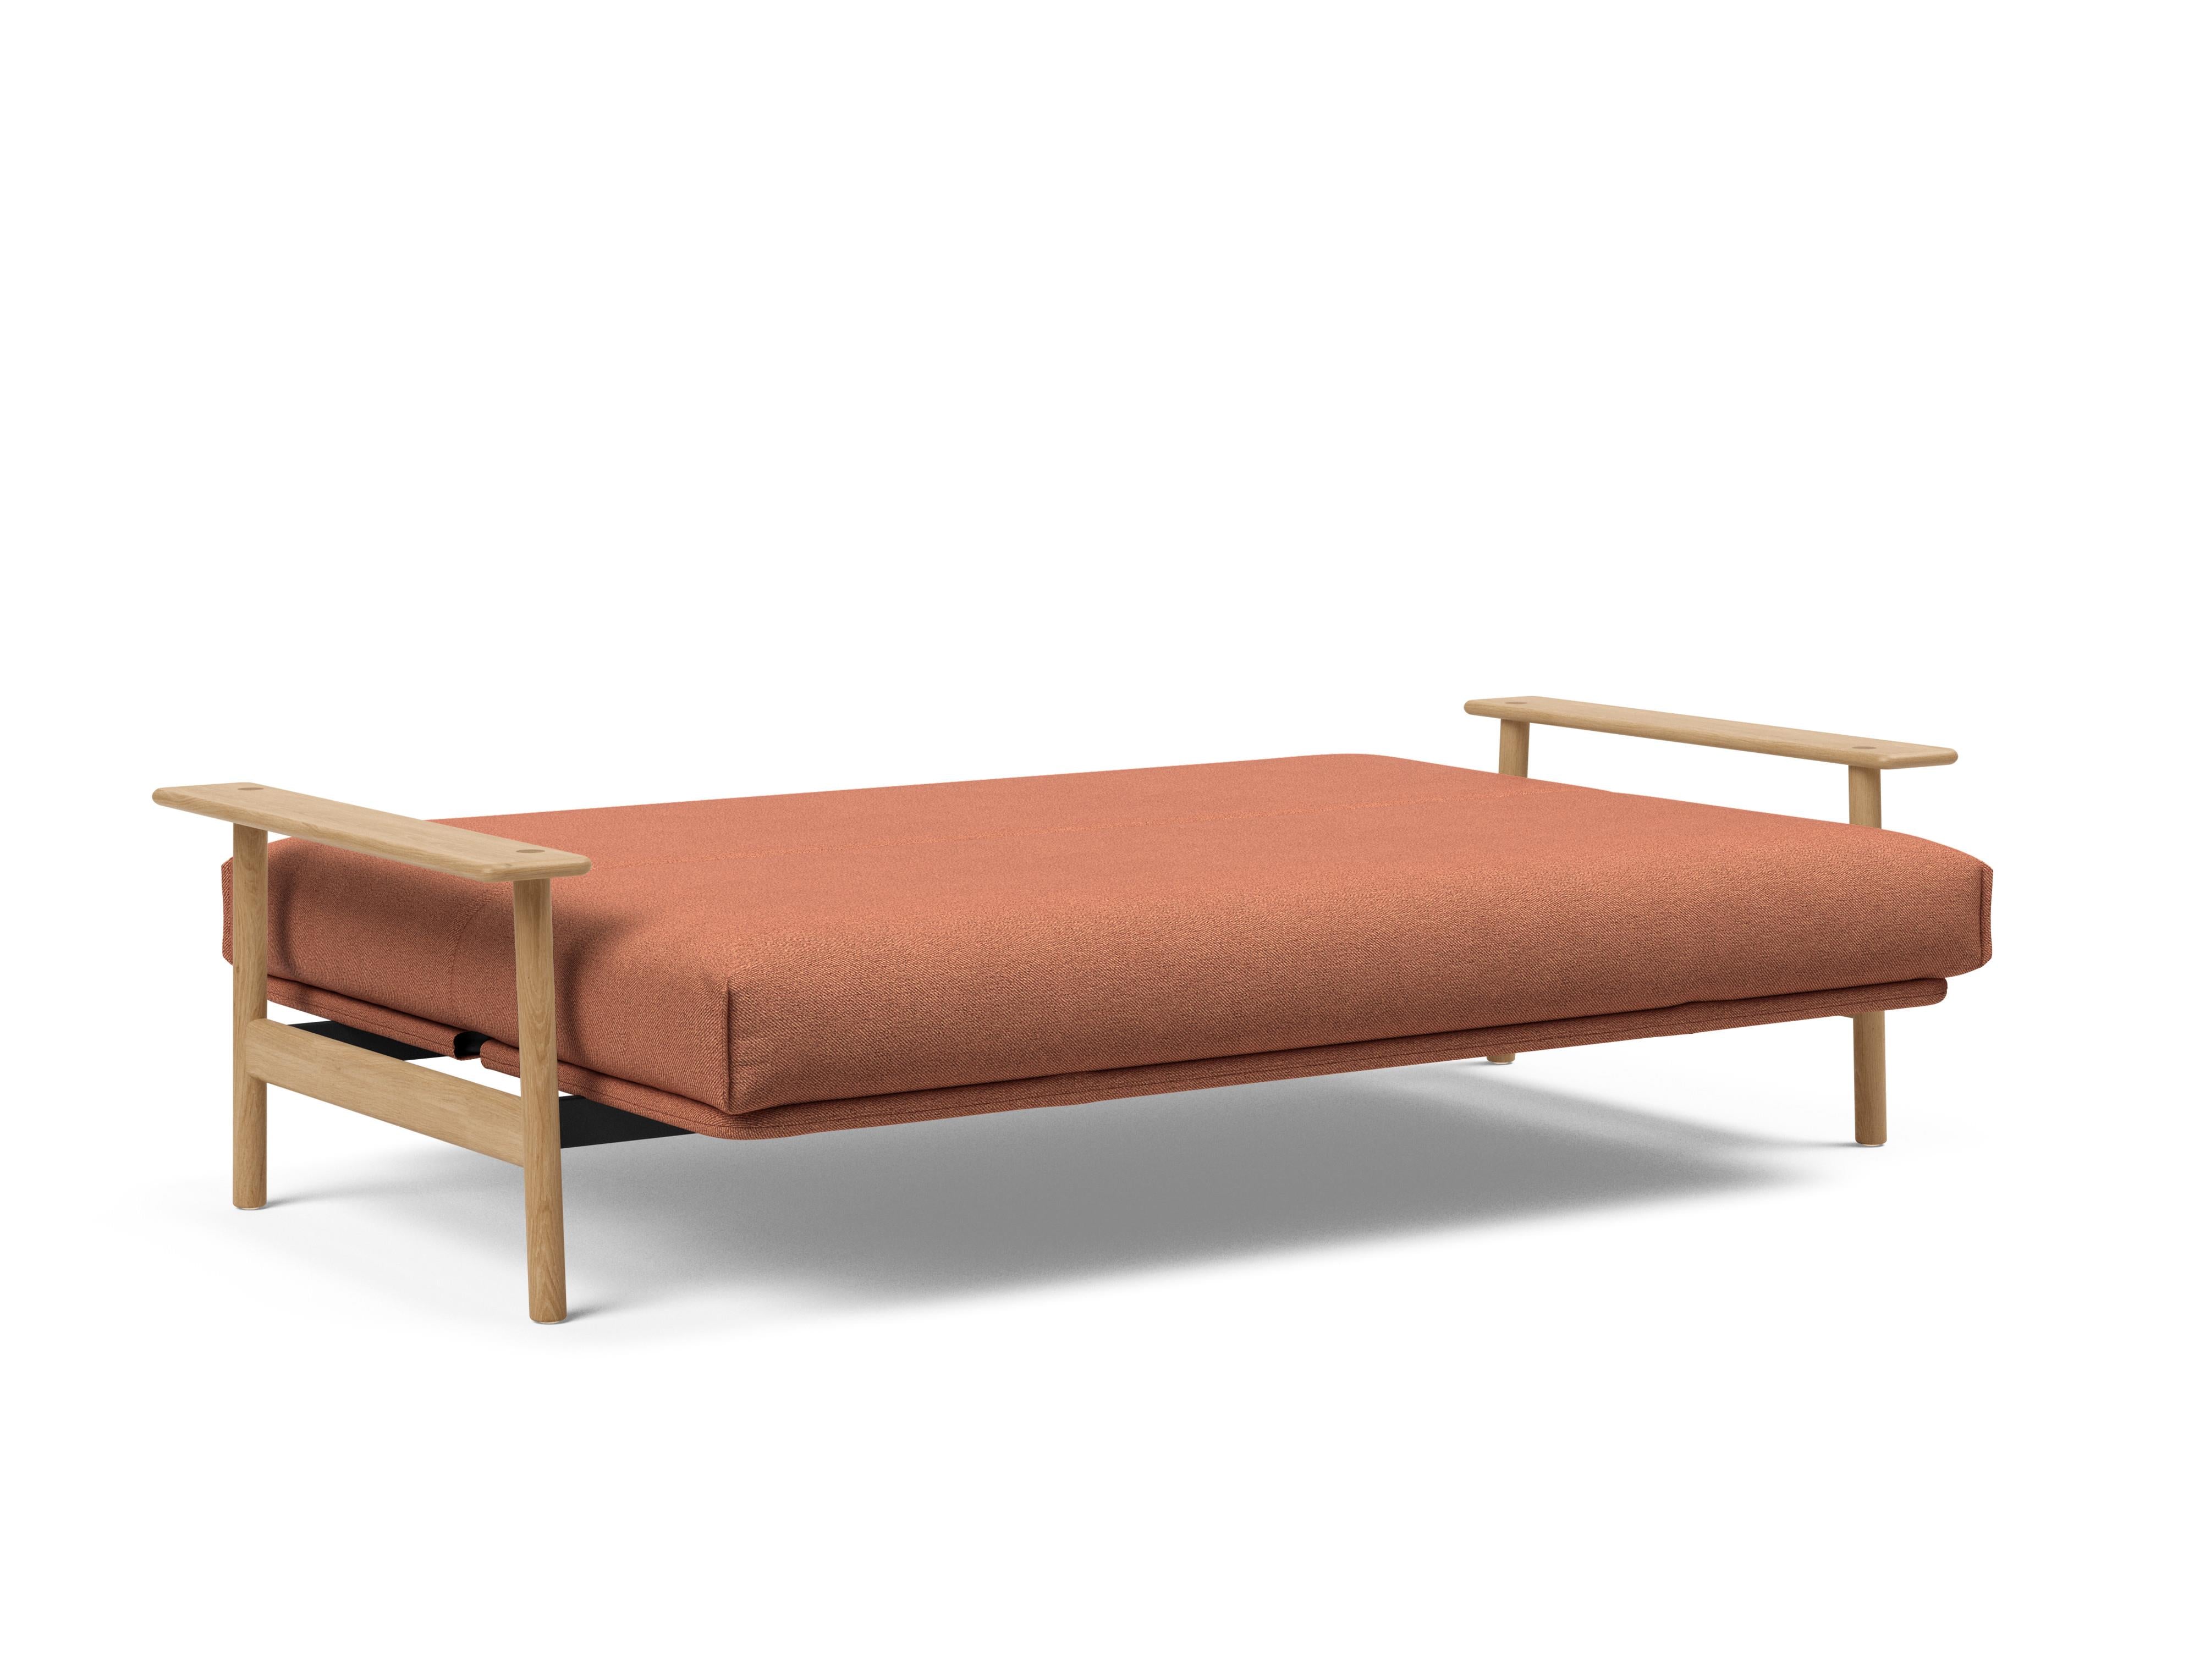 Balder Bettsofa Nordic in Rust 301 präsentiert im Onlineshop von KAQTU Design AG. Bettsofa ist von Innovation Living